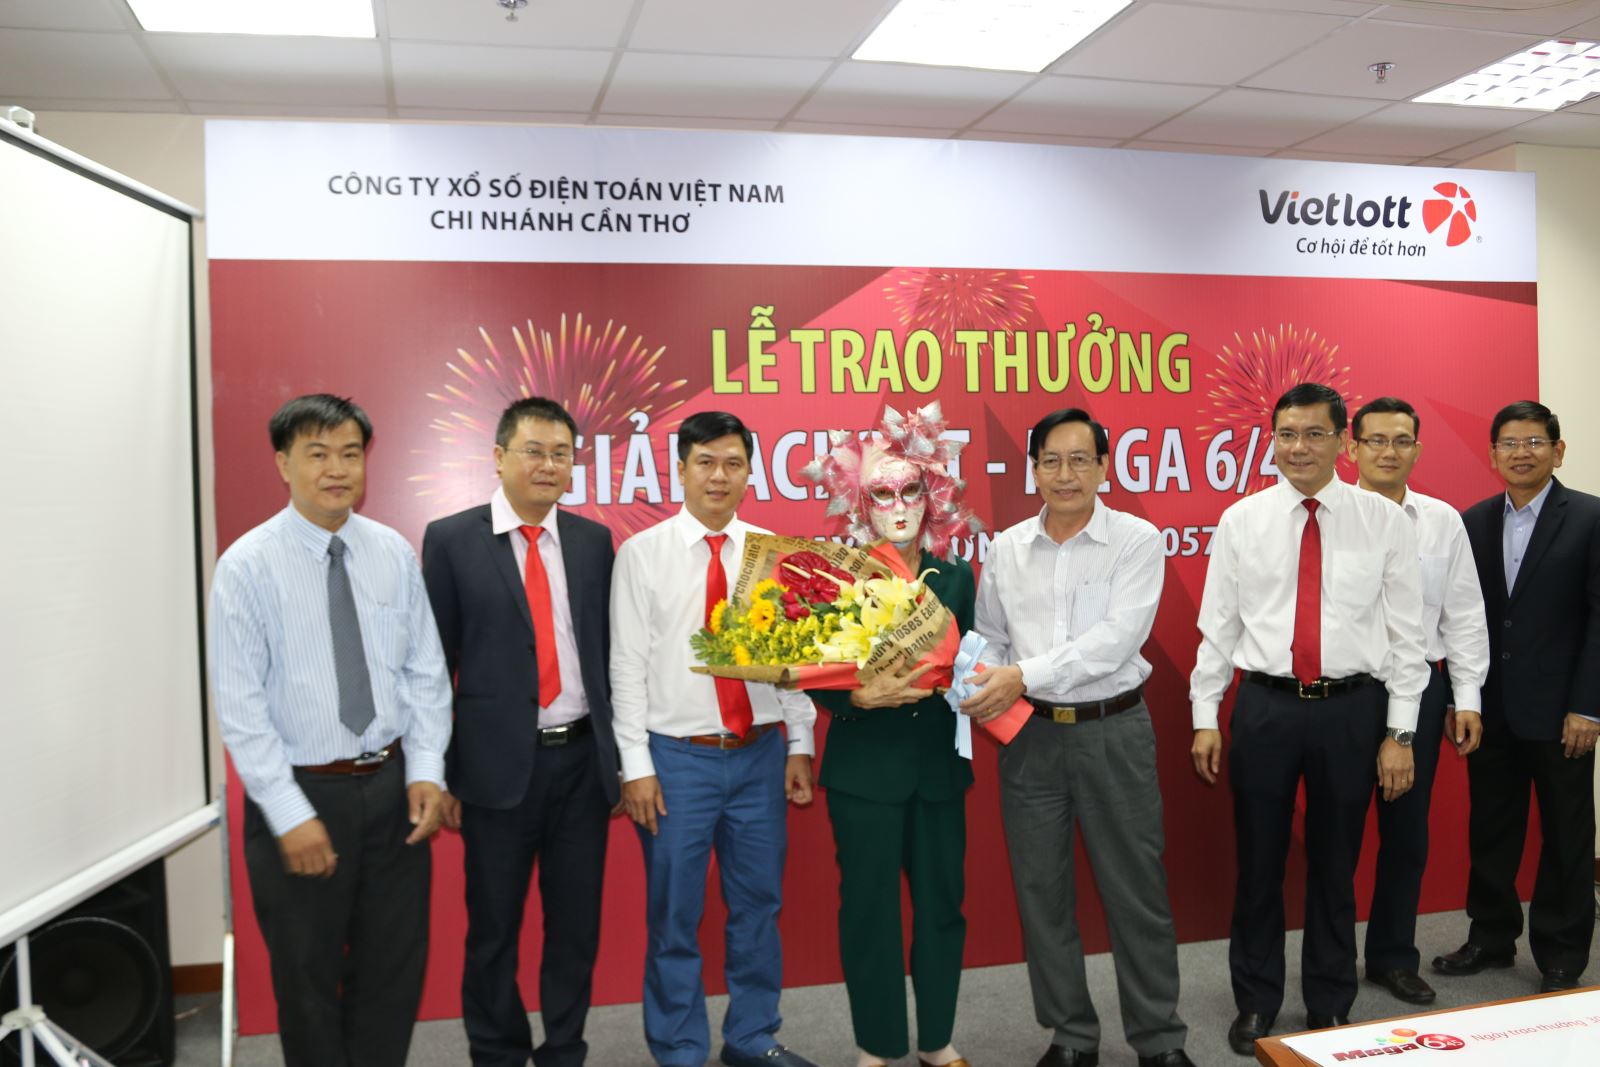 
Đại diện Vietlott và các sở, ban, ngành TP Cần Thơ chứng kiến lễ trao thưởng cho bà H. ngụ tỉnh Vĩnh Long
